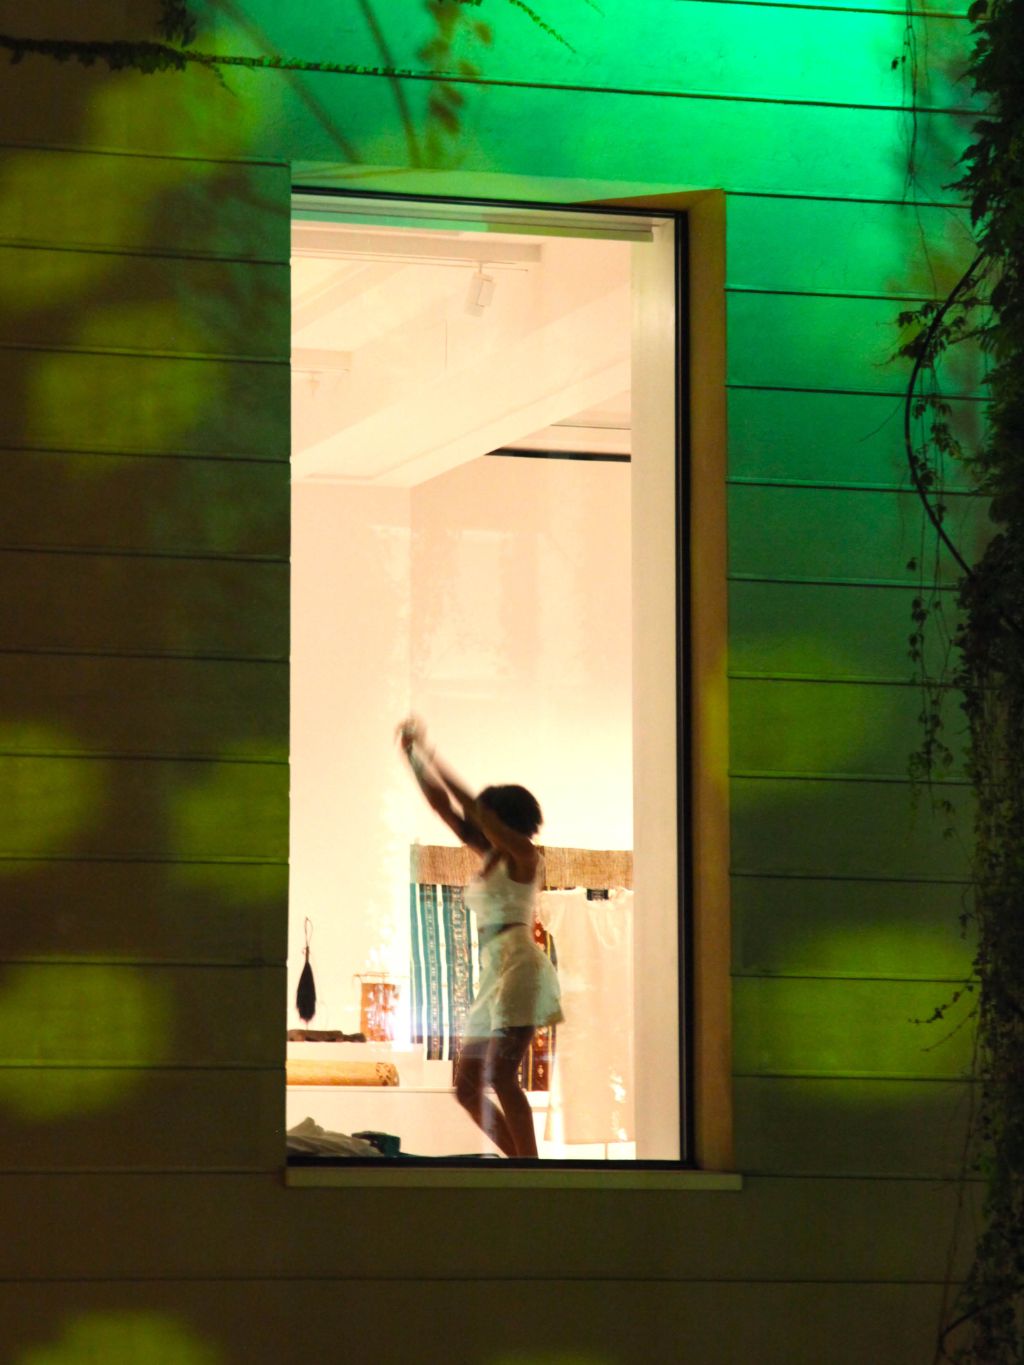 Museumsfassade bei Nacht mit hellerleuchtenden Fenster. Im Fenster tanzt eine Frau mit kurzem weissen Kleid.